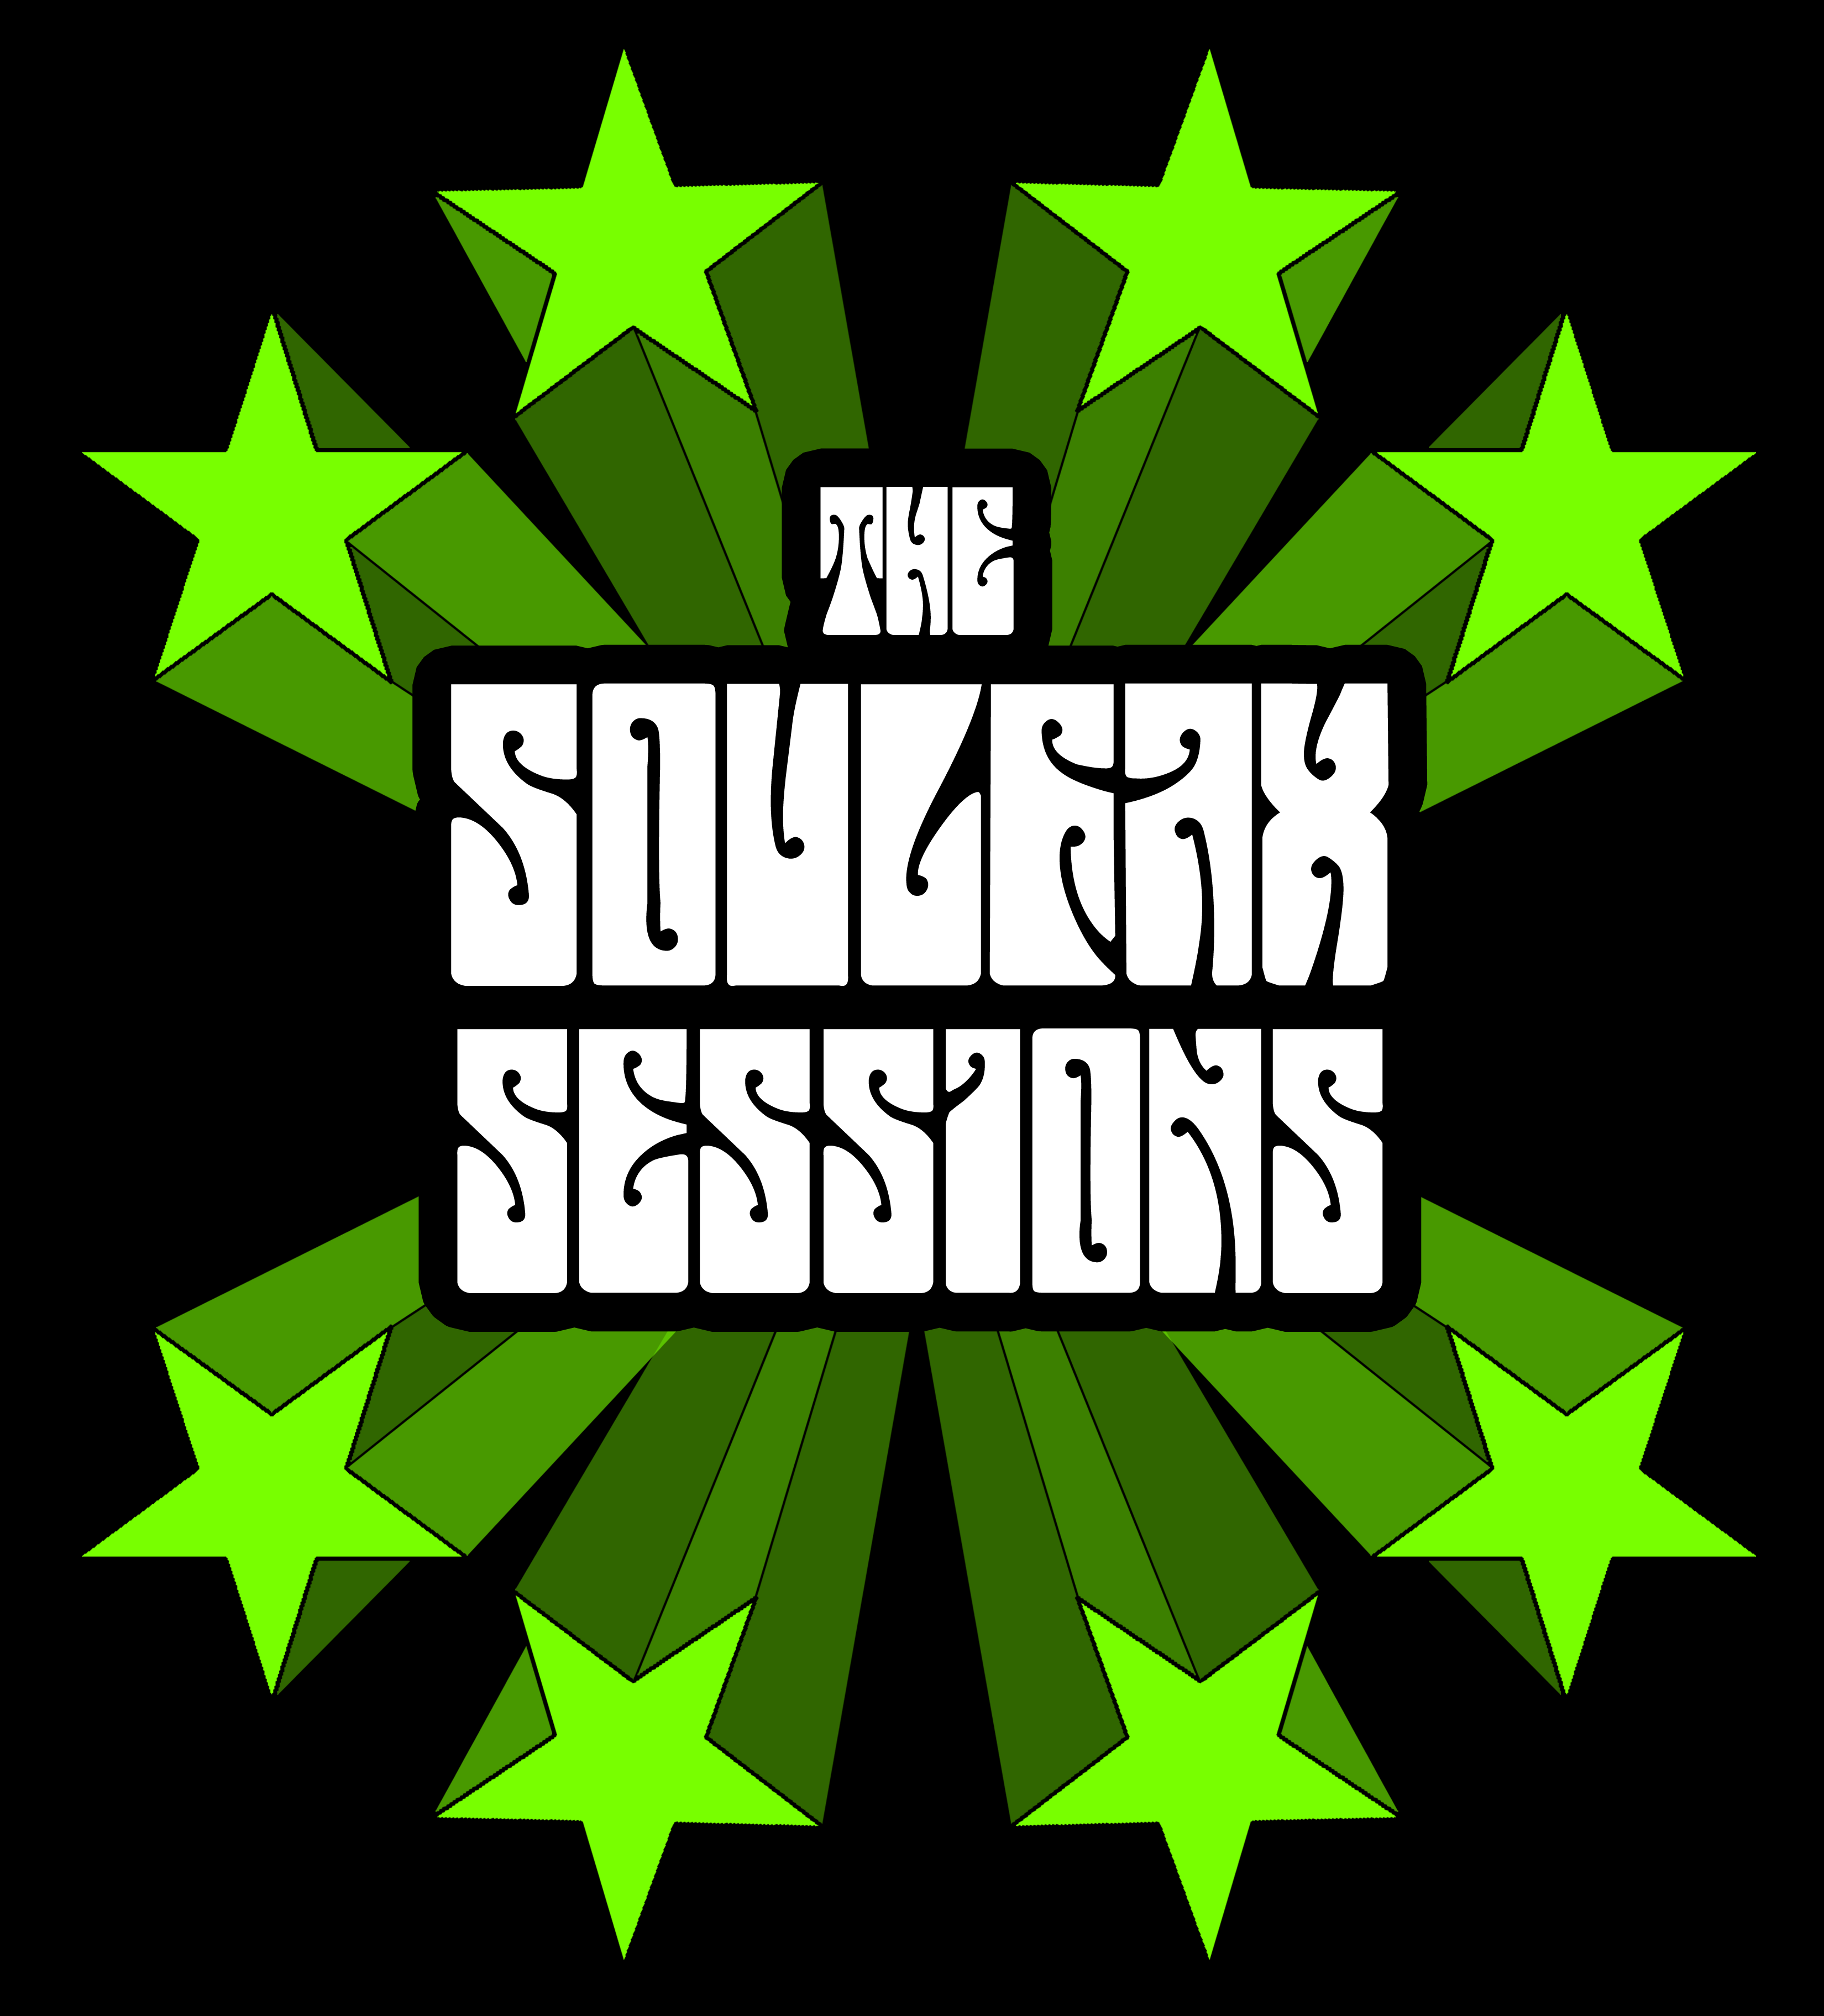 Listen Up Denver & Park House Present: "Soulfax Sessions"